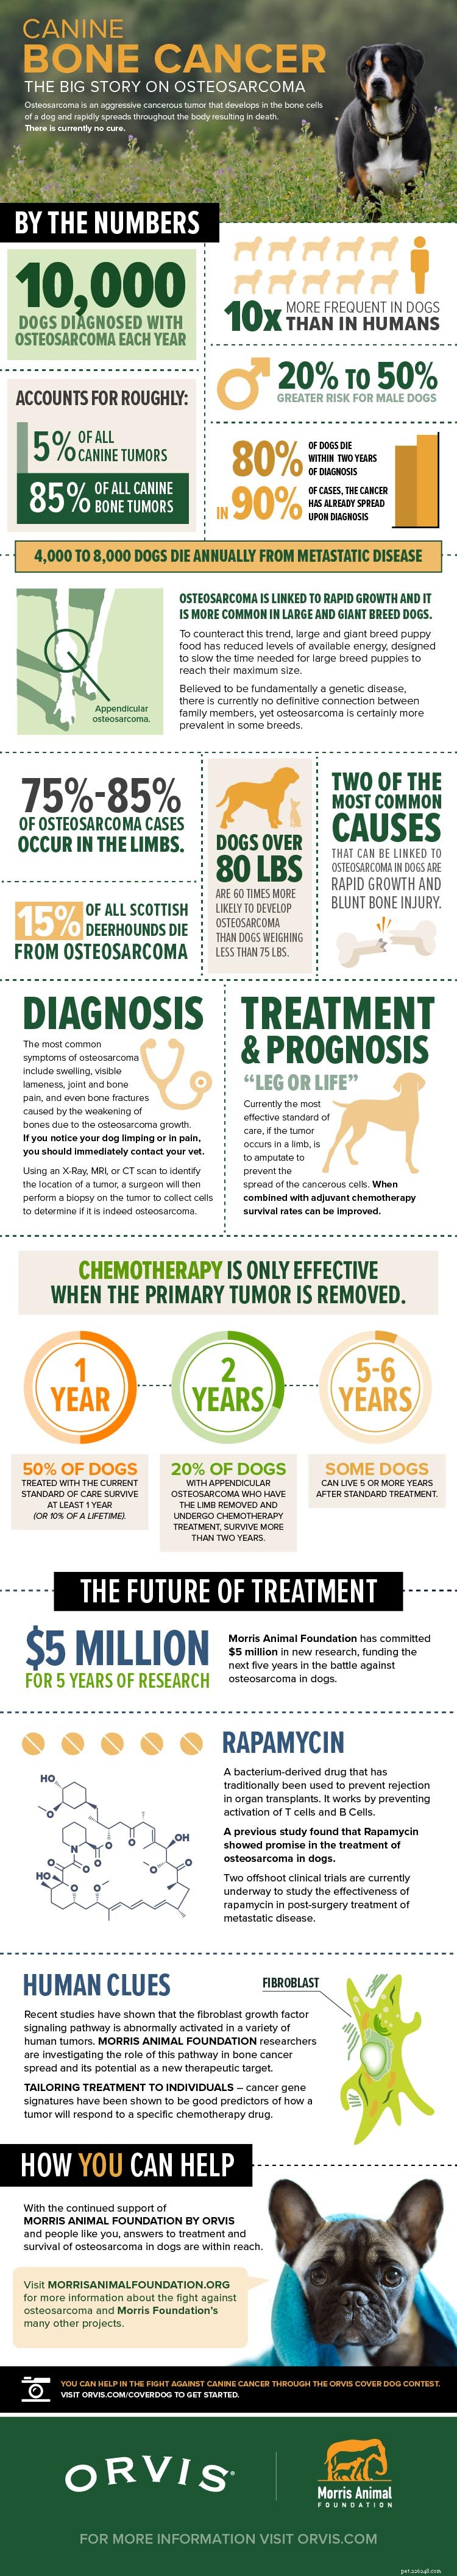 Rakovina kostí u psů:Co to znamená pro vašeho psa a co dělat